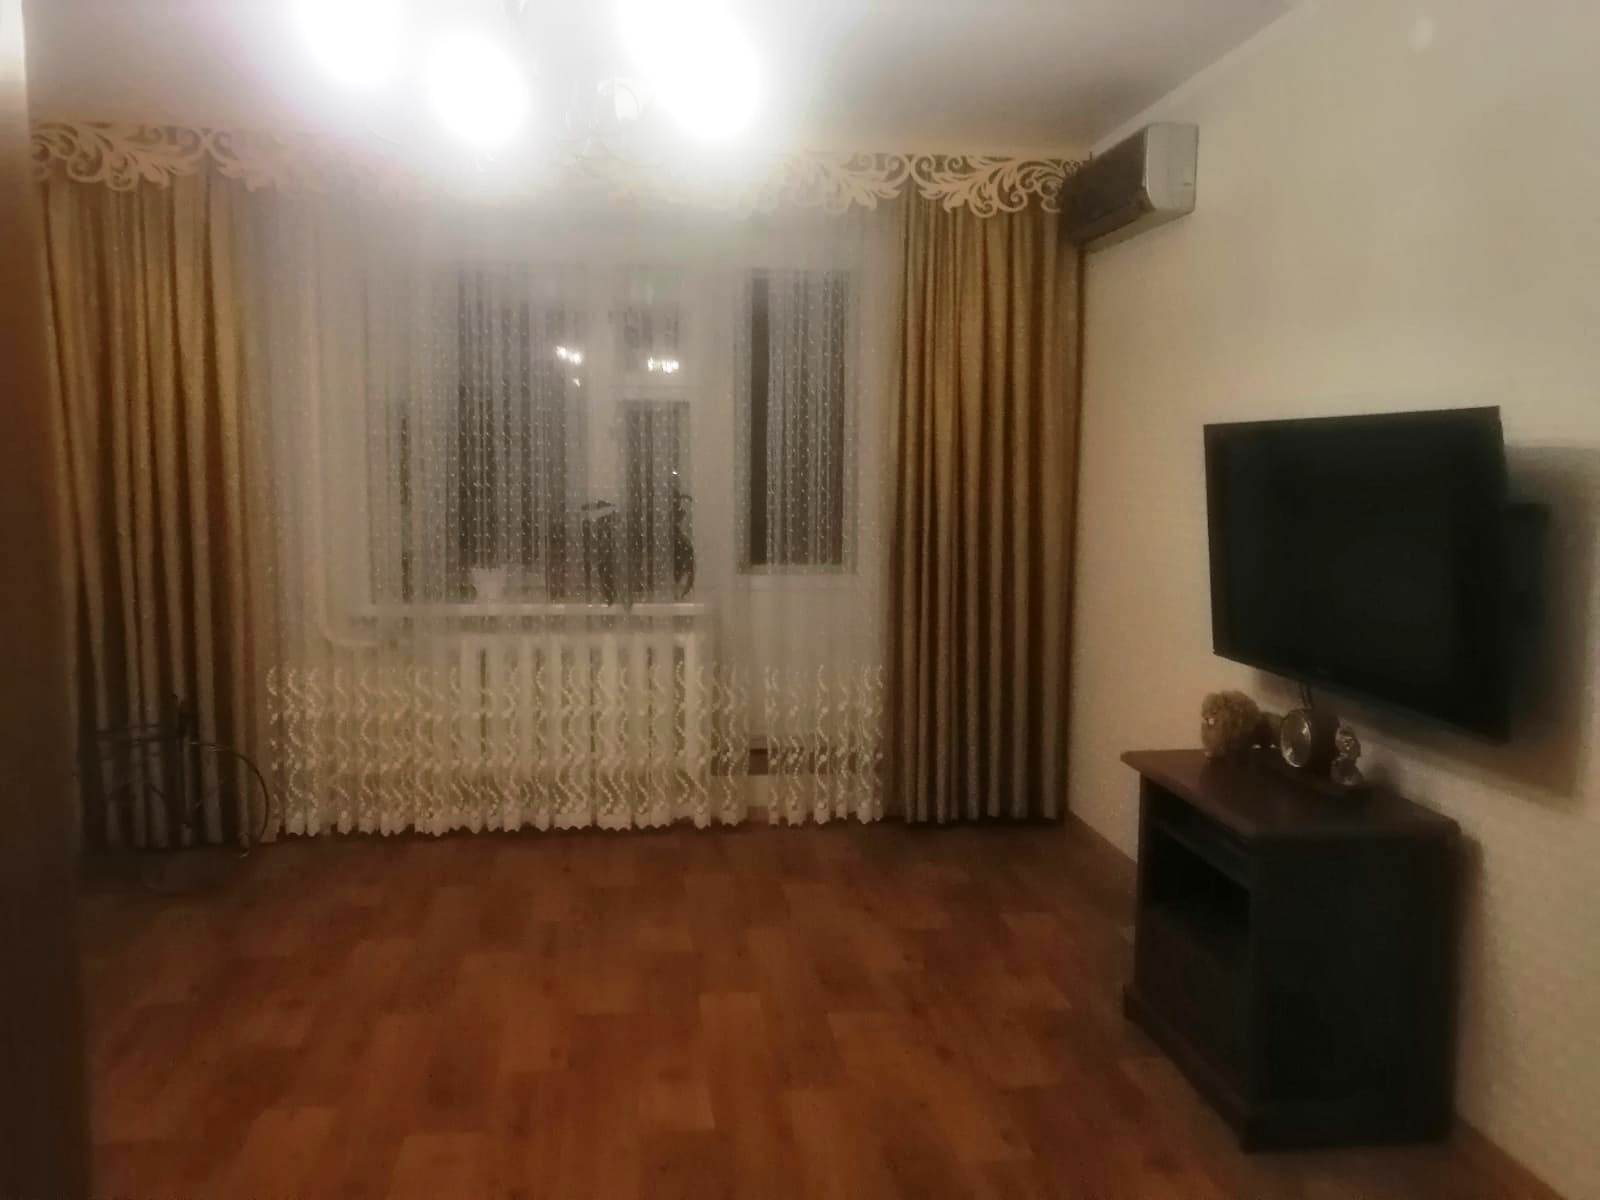 Продается отличная 3-х комнатная квартира улучшенной планировки на среднем этаже кирпичного дома в г. Зеленодольск....